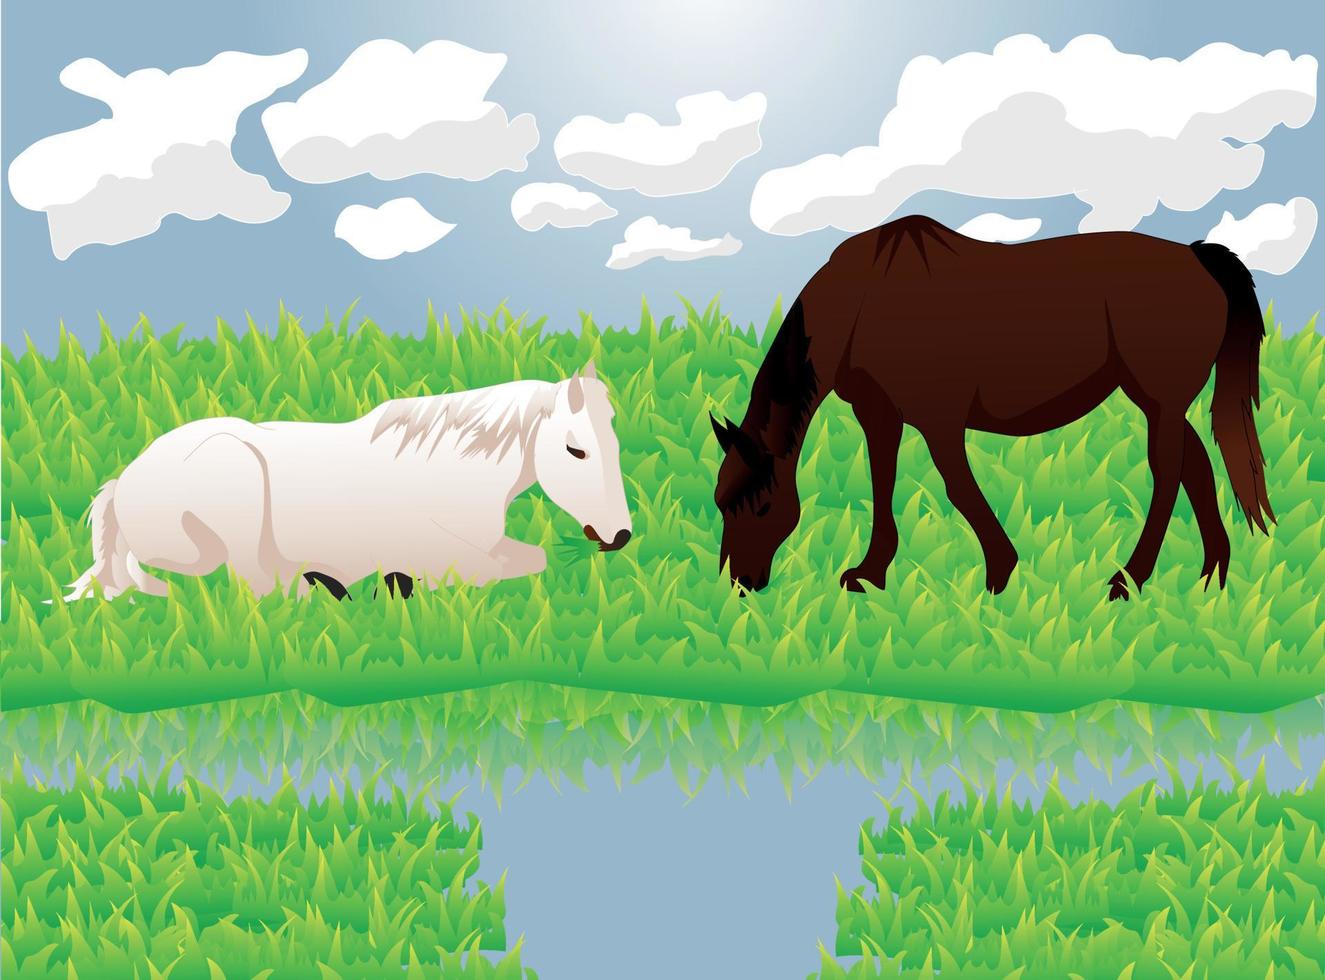 hästar på betesmarker äter gräs, vektor illustration